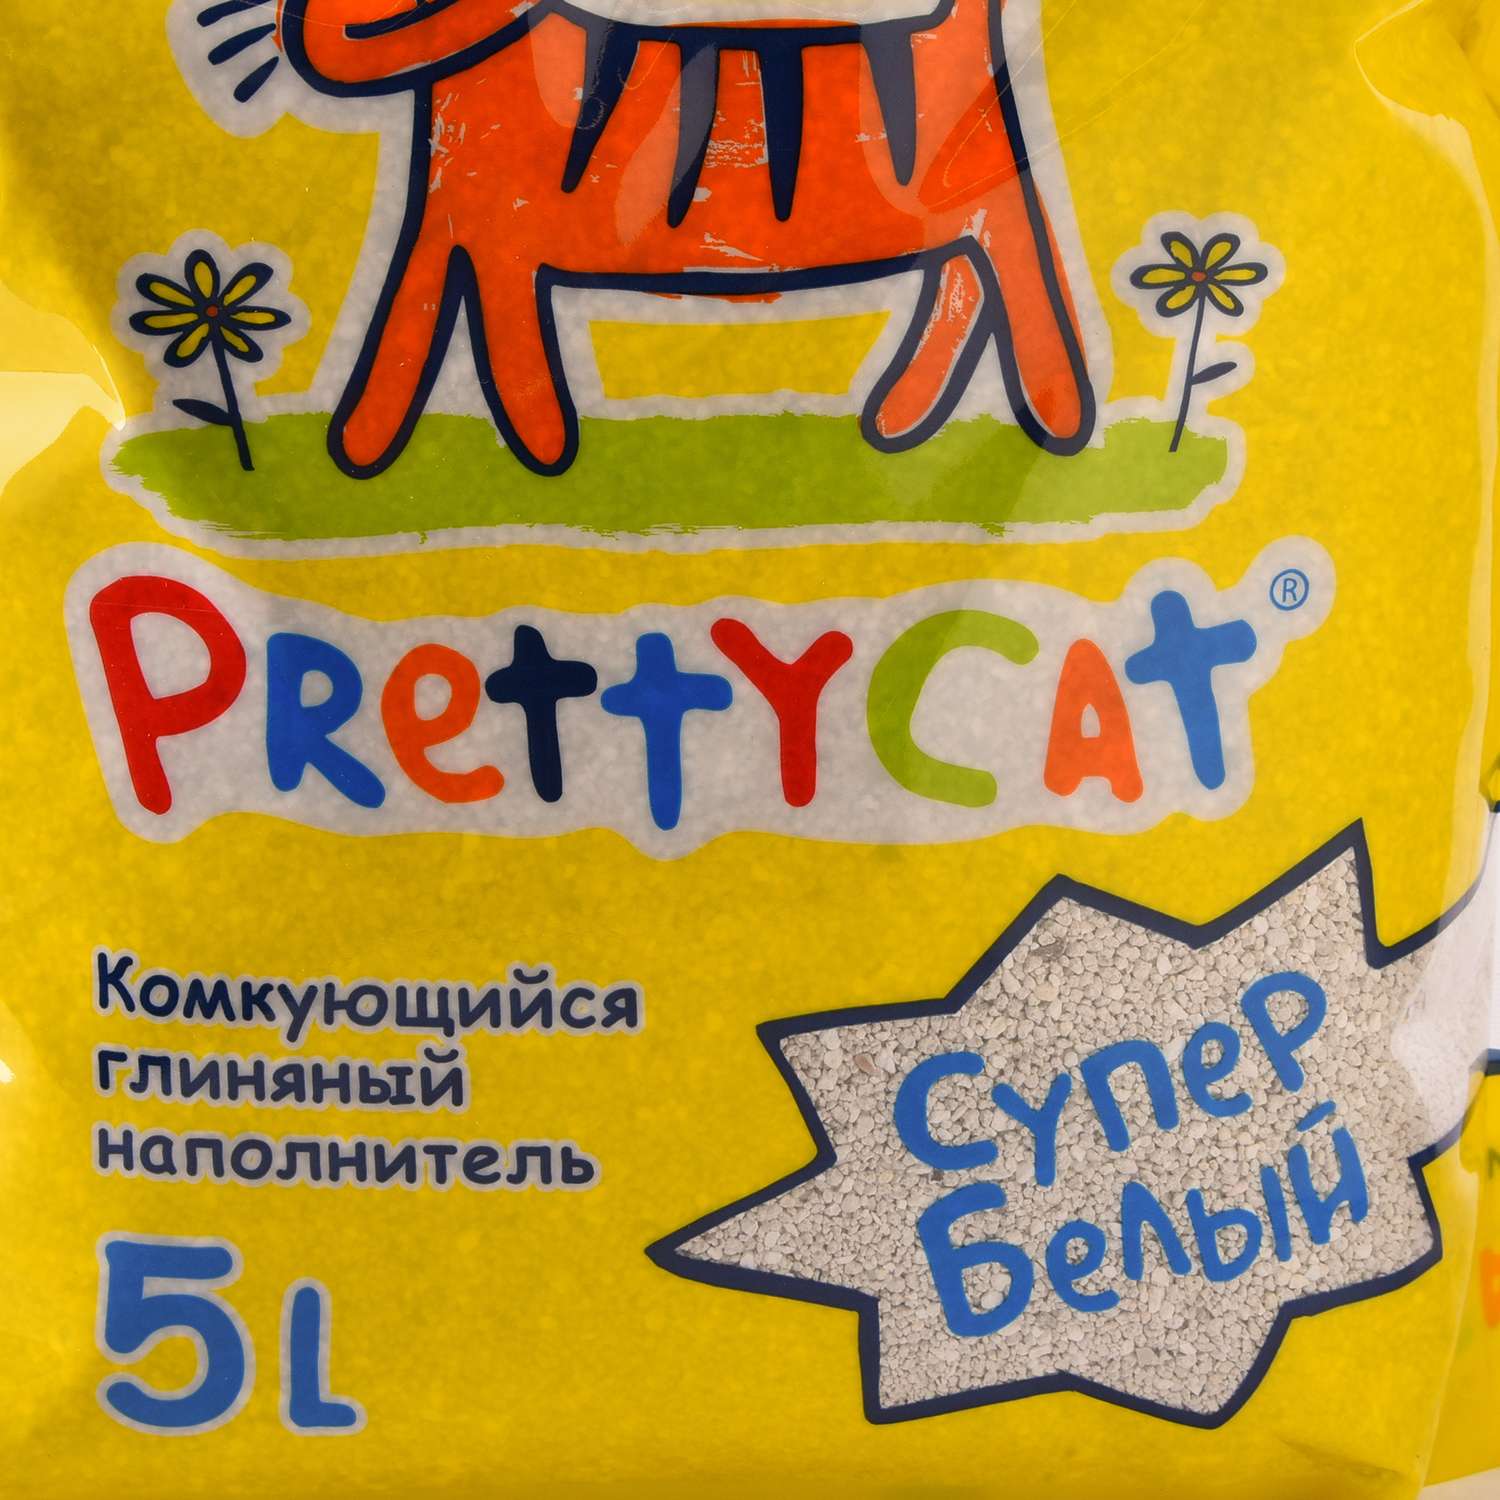 Наполнитель для кошек PrettyCat Супер белый комкующийся с ароматом ванили 5л - фото 4